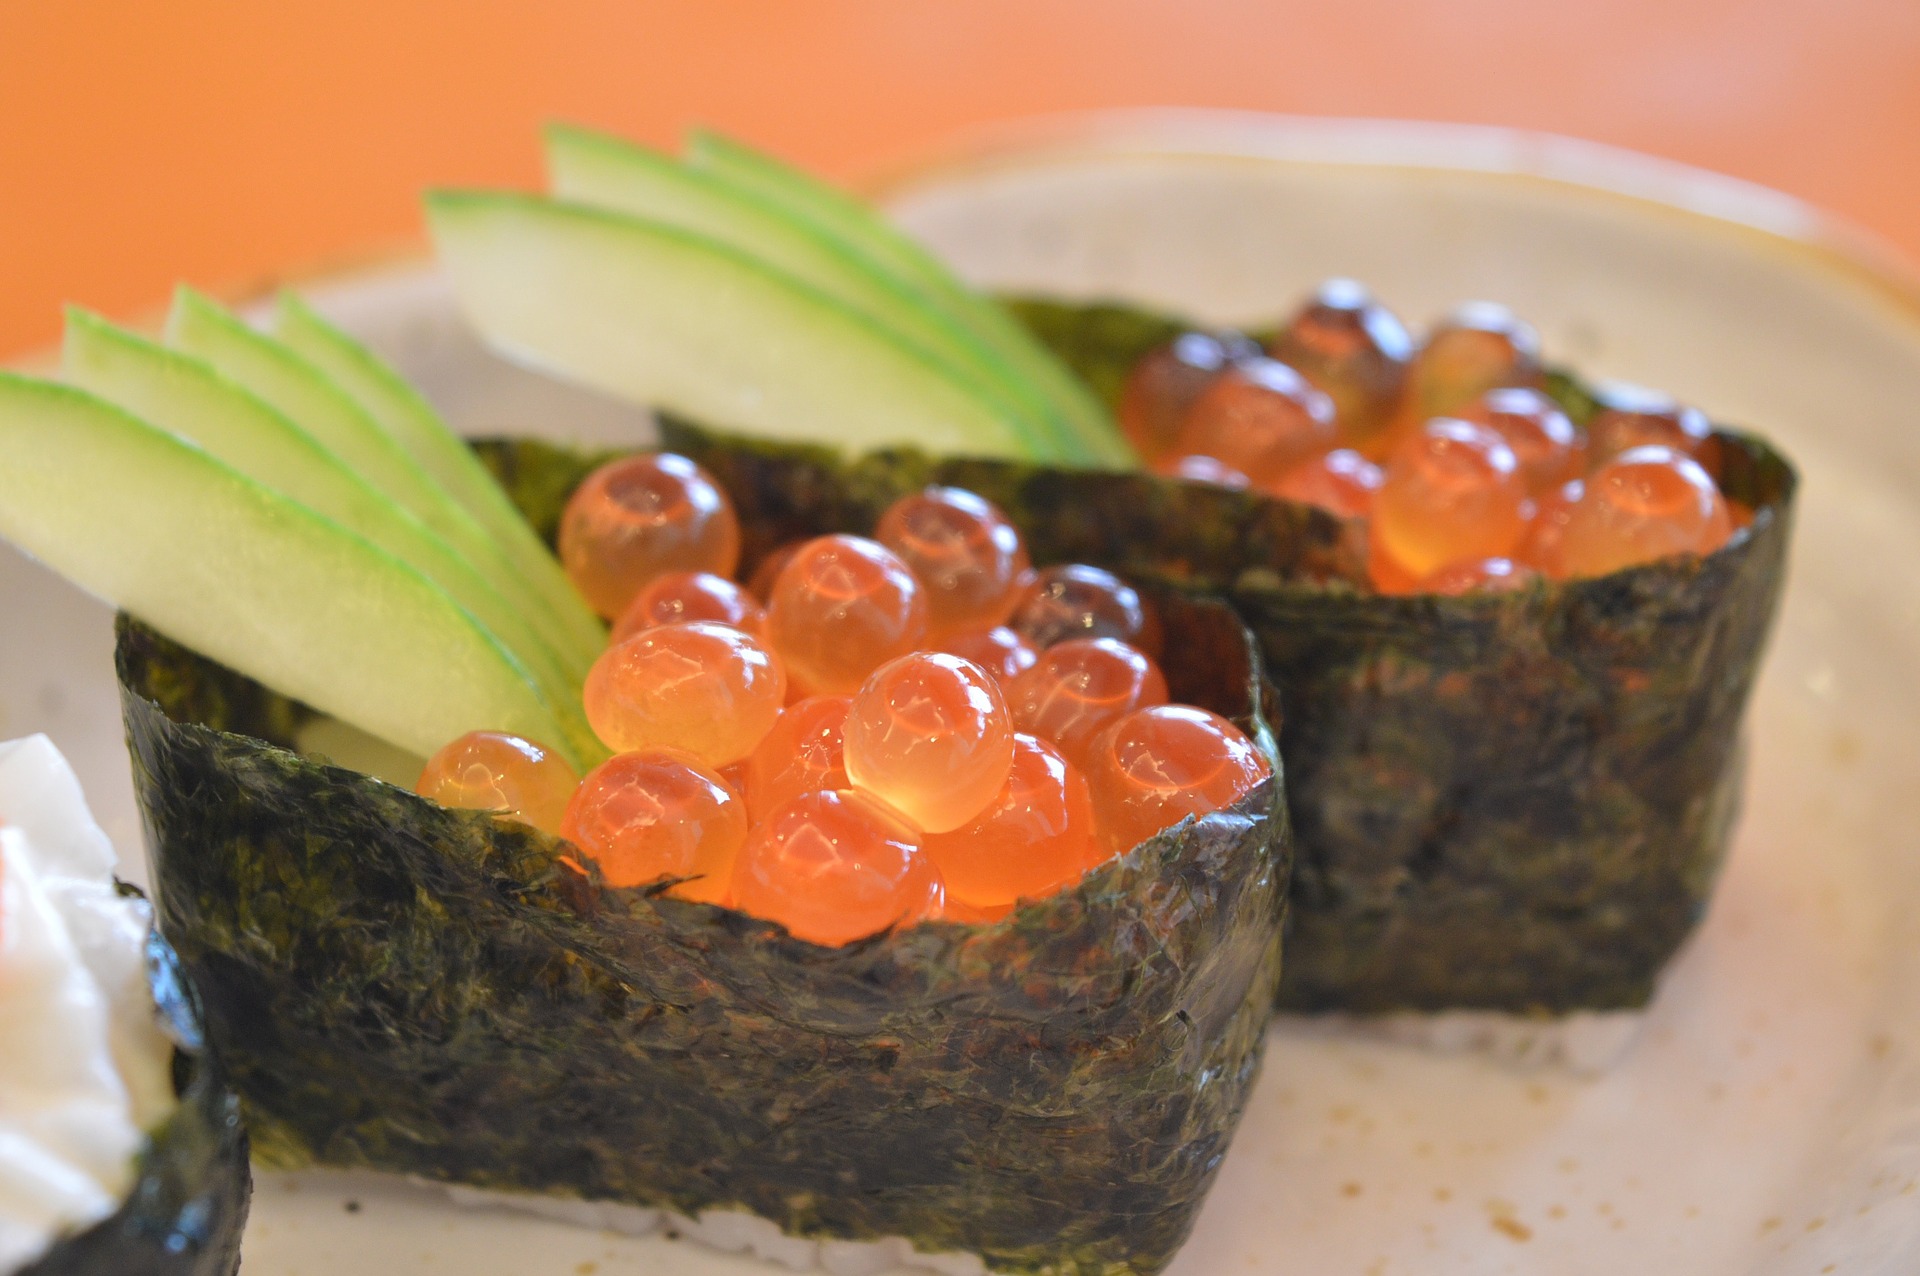 ซูชิไข่ปลา เมนูอาหารญี่ปุ่นสุดอ้วน ไม่อยากเสี่ยงต้องเลี่ยง 